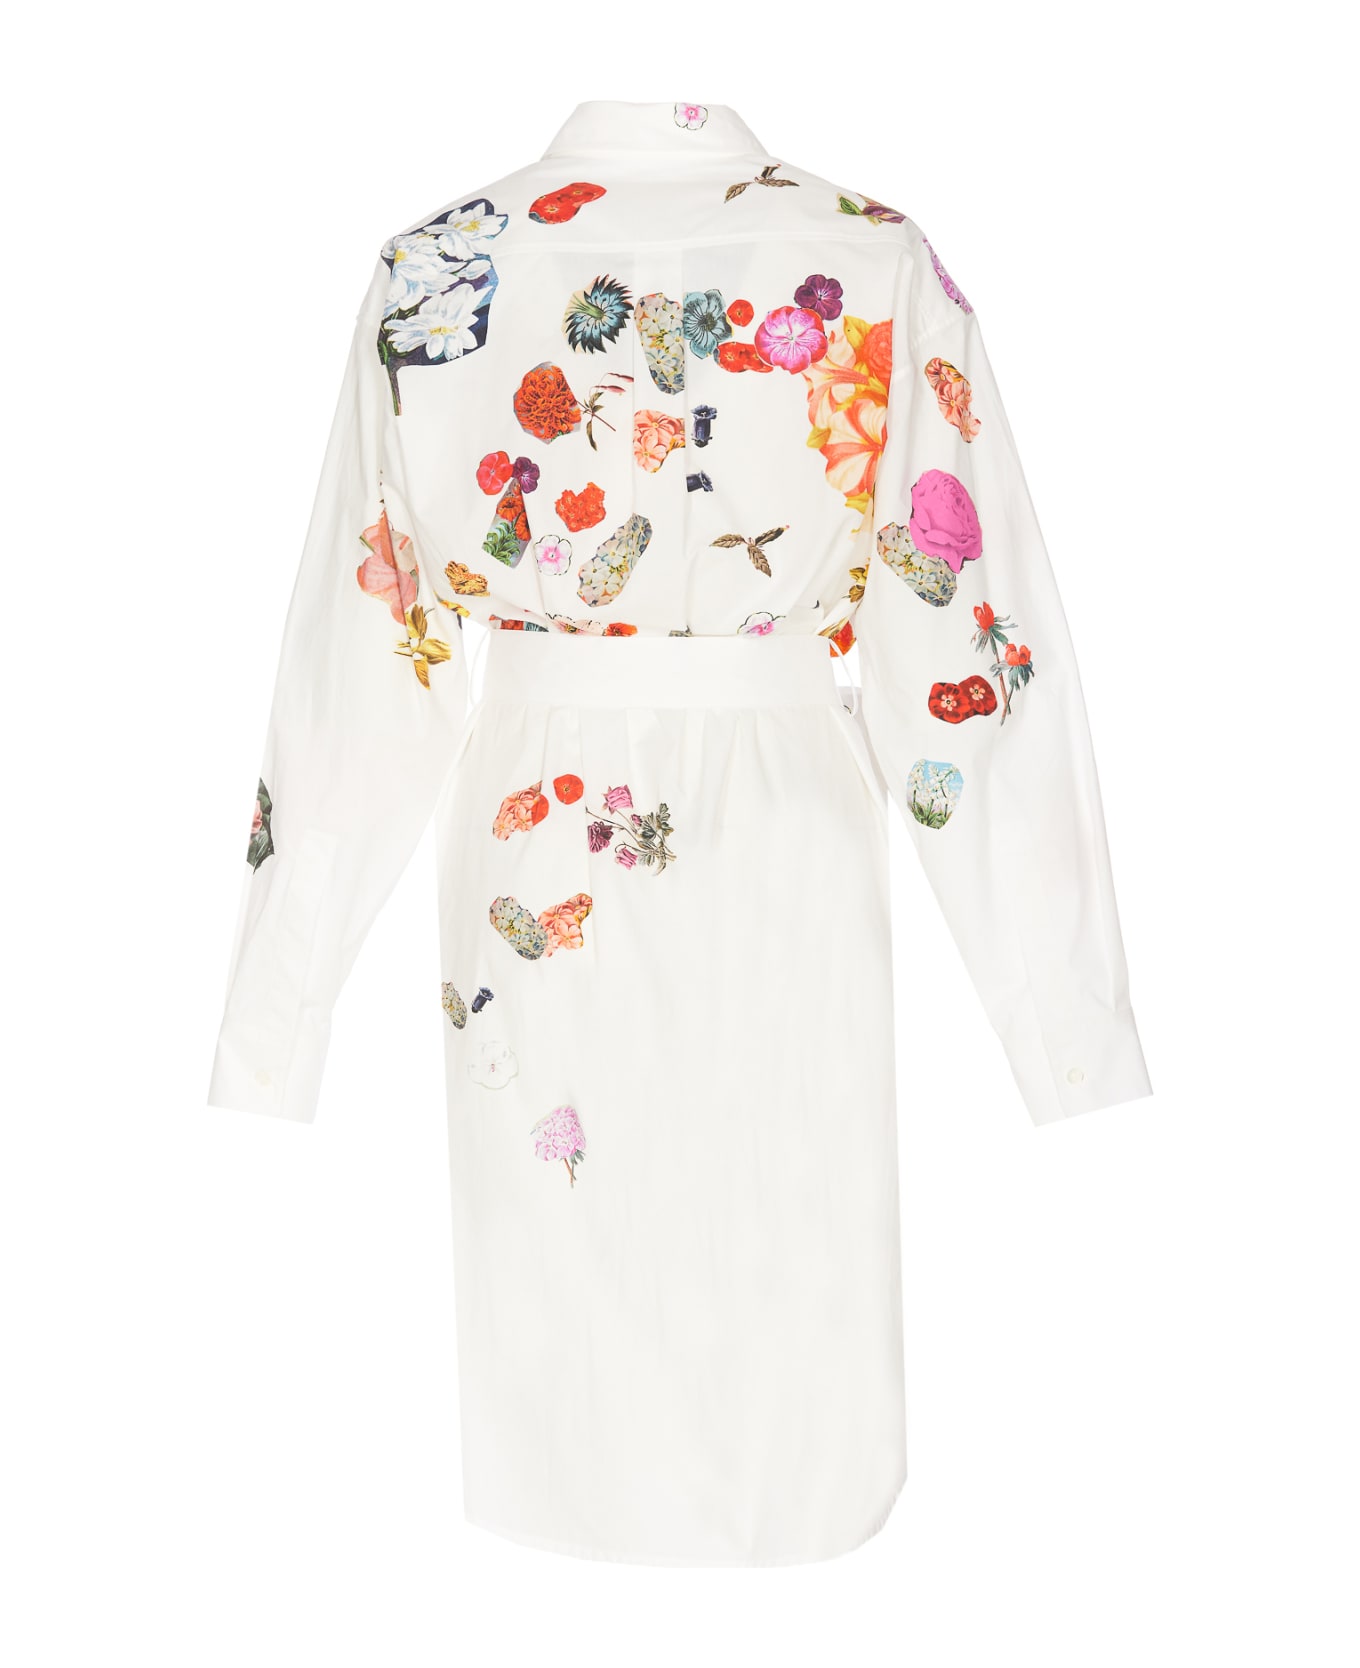 Marni Floral Print Dress - White